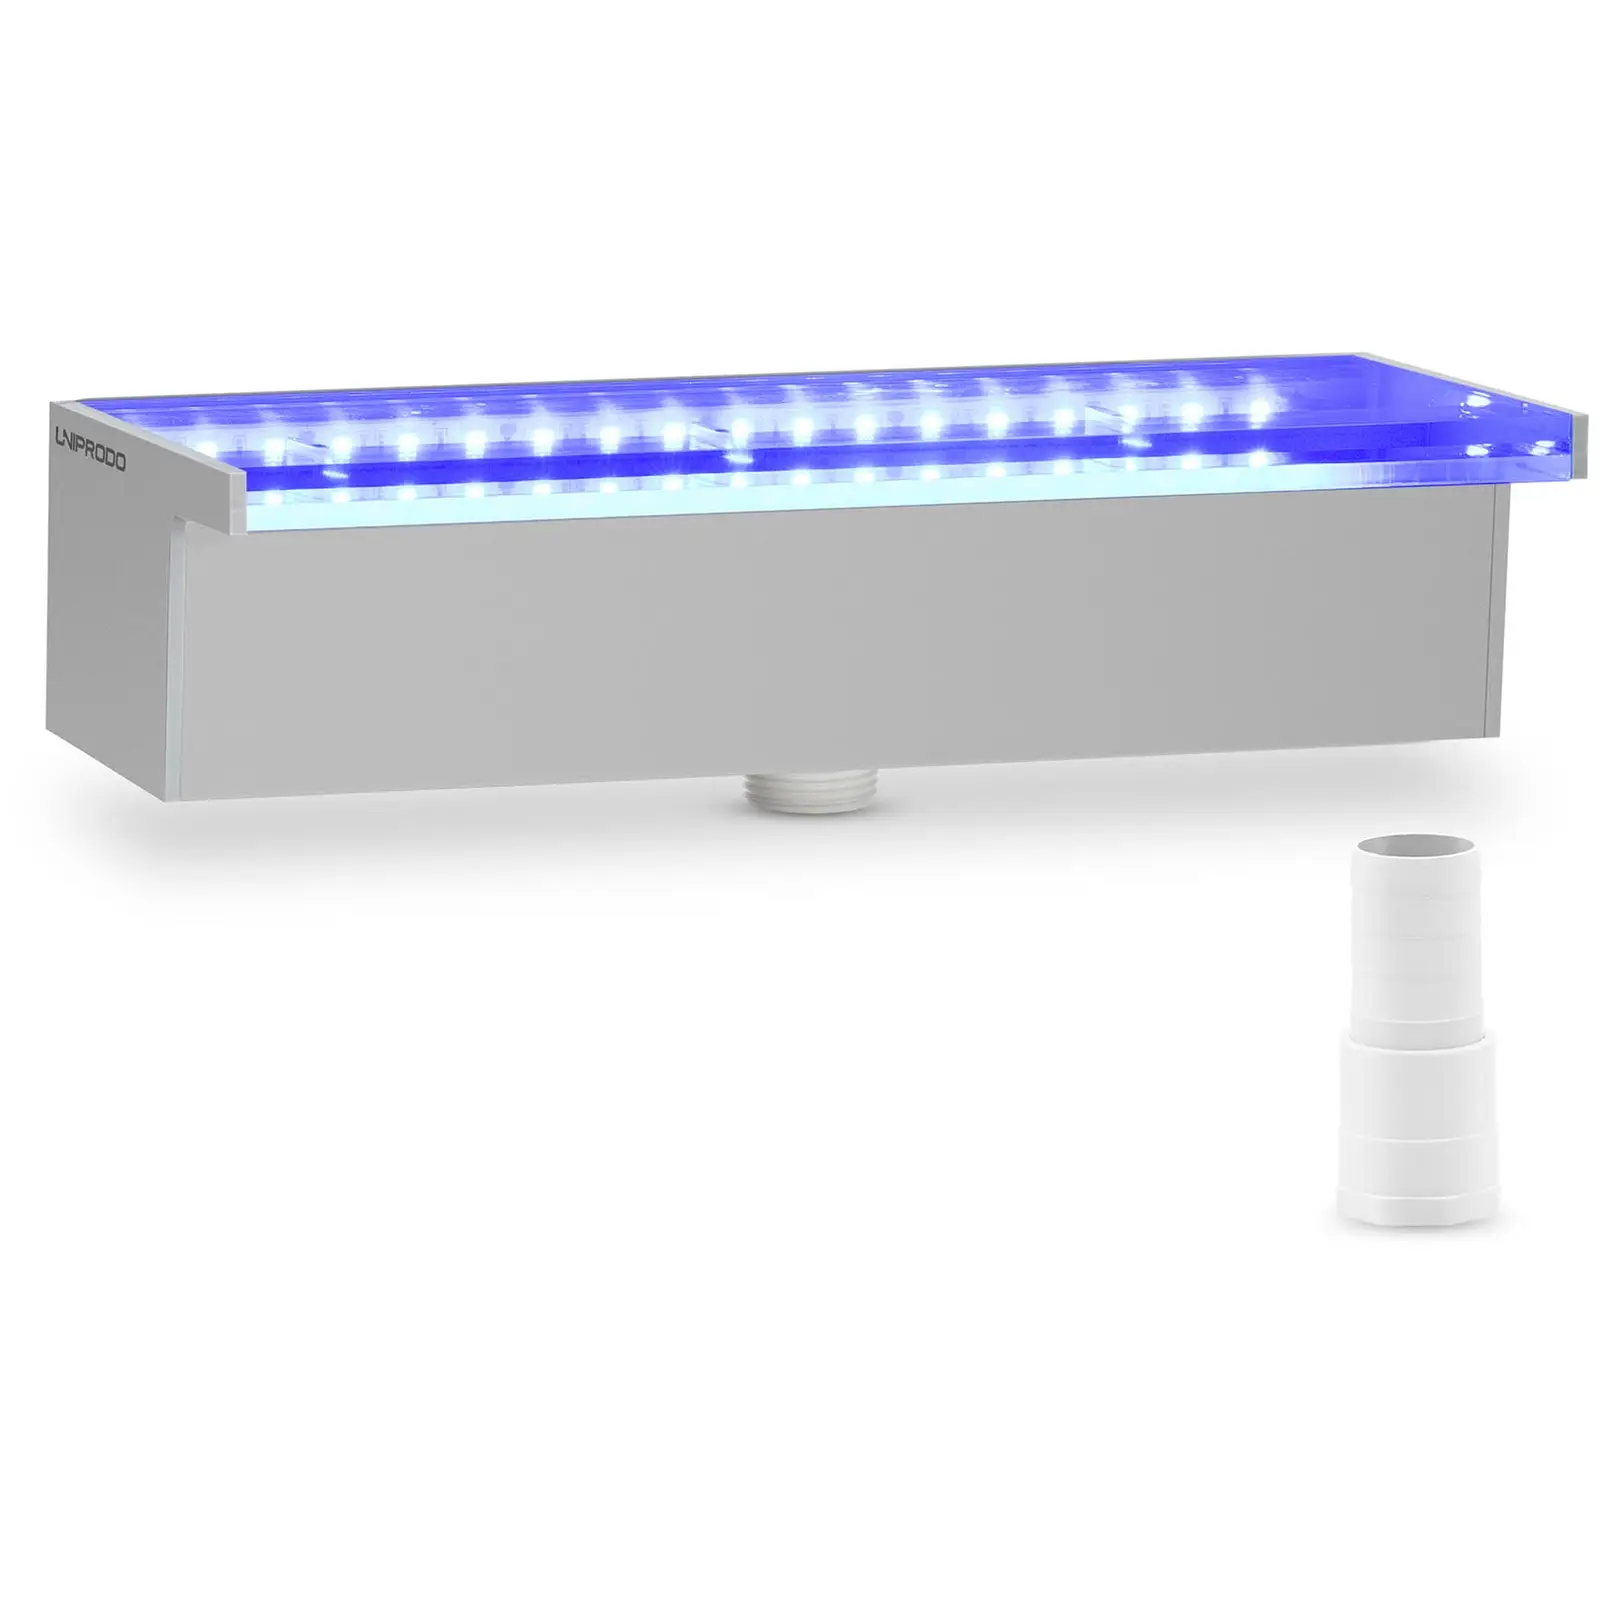 Wylewka wodospadowa - 30 cm - oświetlenie LED - niebieski/biały - do głębokiej wody